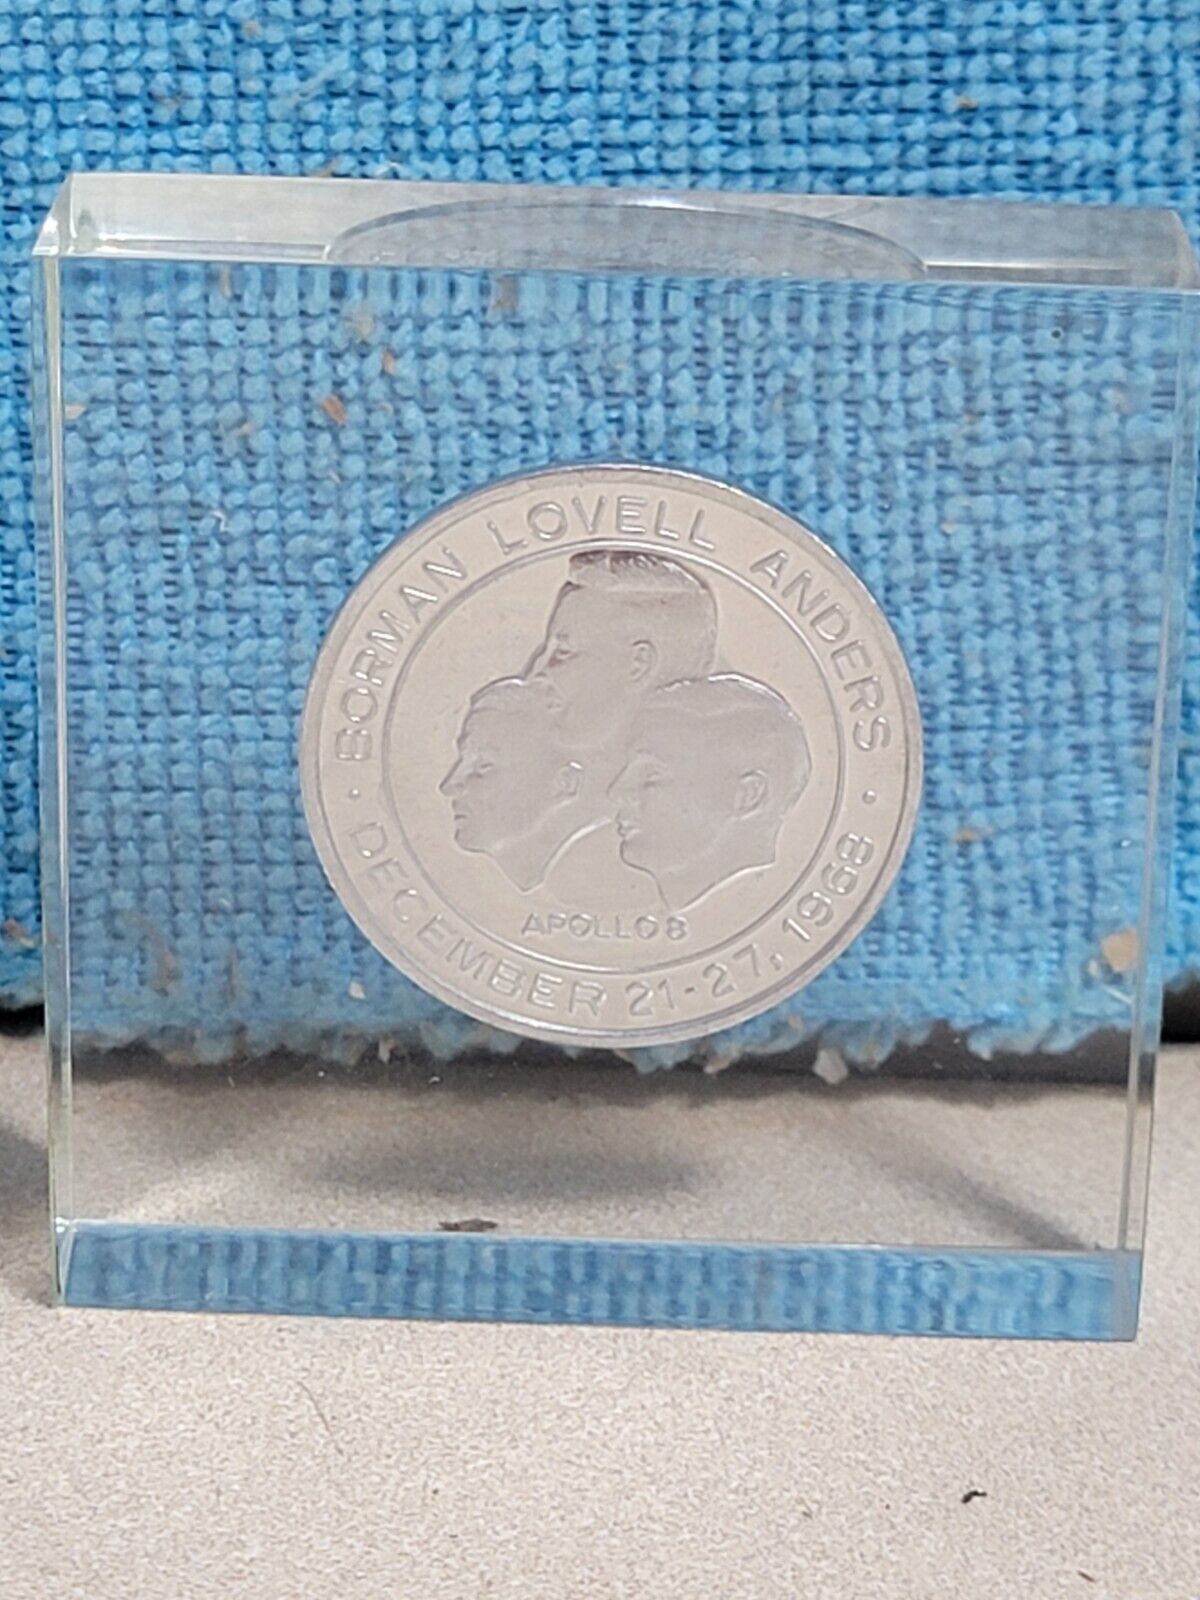 Vintage 1968 NASA APOLLO 8 First Lunar Flight  Collectible Silver Coin *ENCASED*